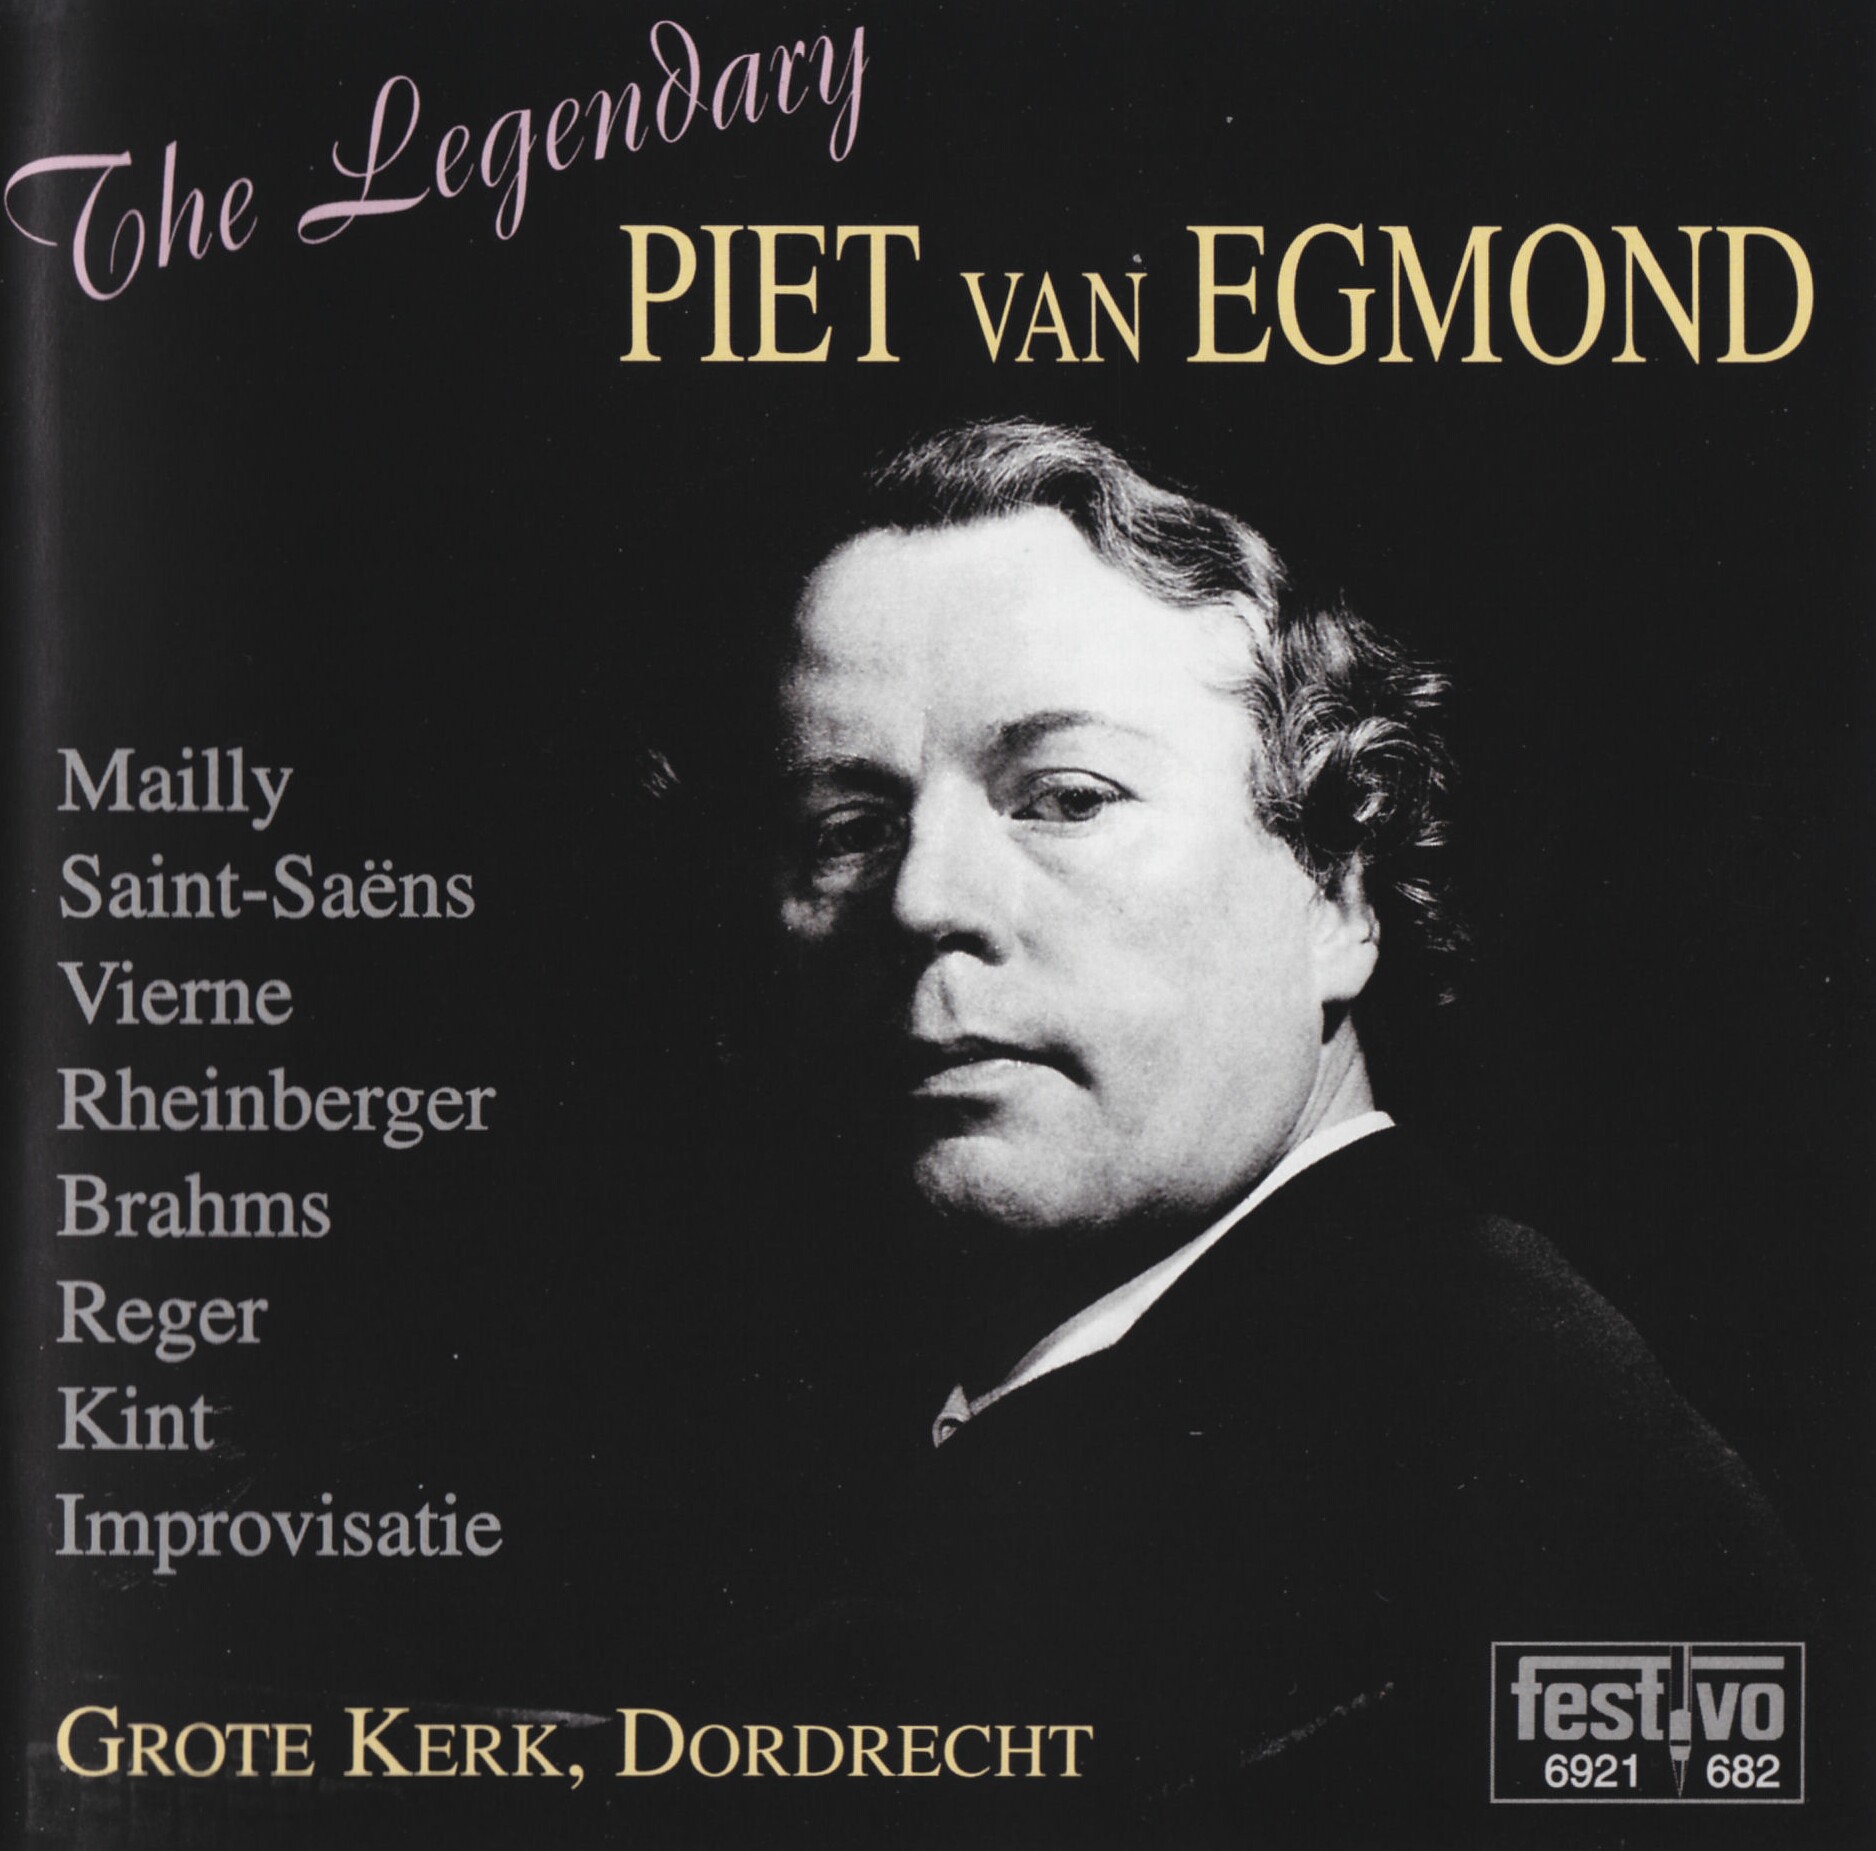 Piet van Egmond - the Legendary Piet van Egmond Kam-Orgel Grotekerk Dordrecht